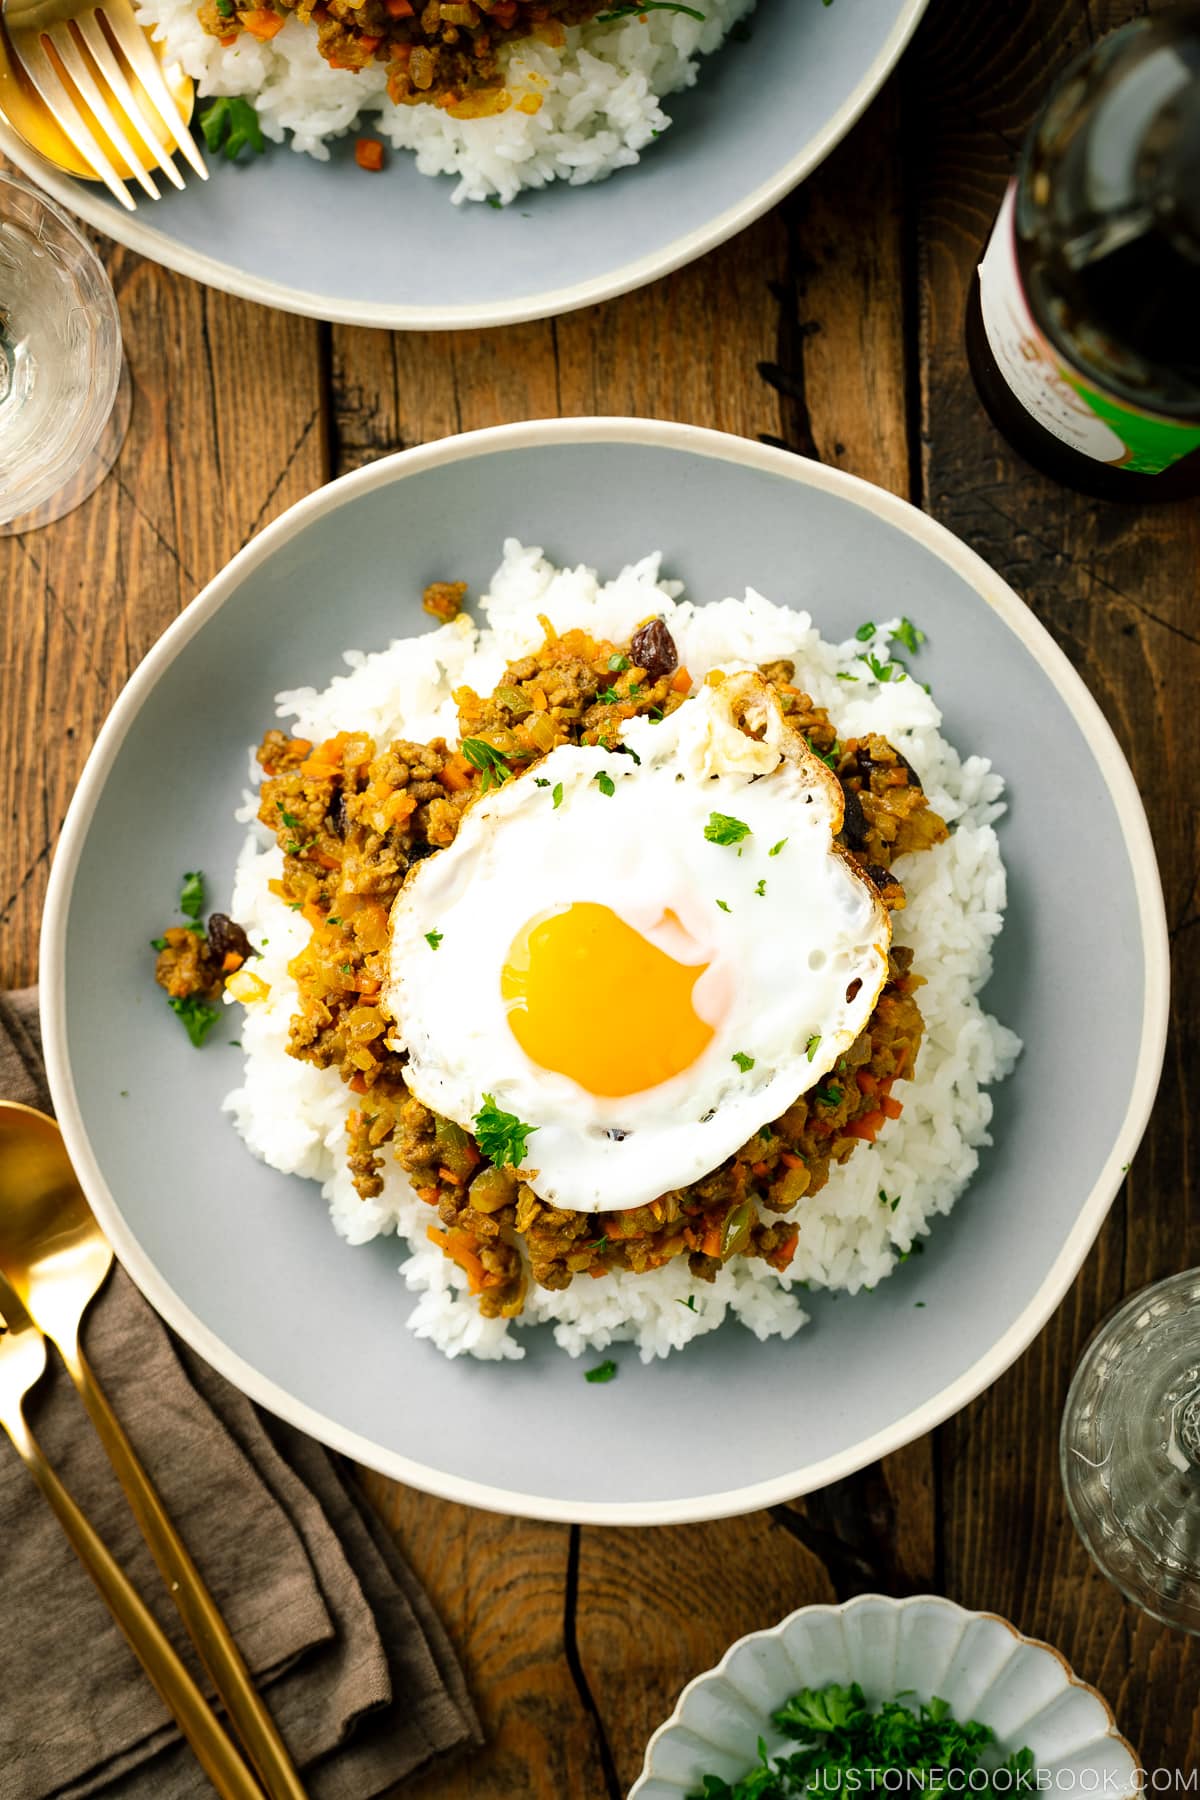 Un piatto di ceramica contenente riso al vapore, curry secco e un uovo fritto.